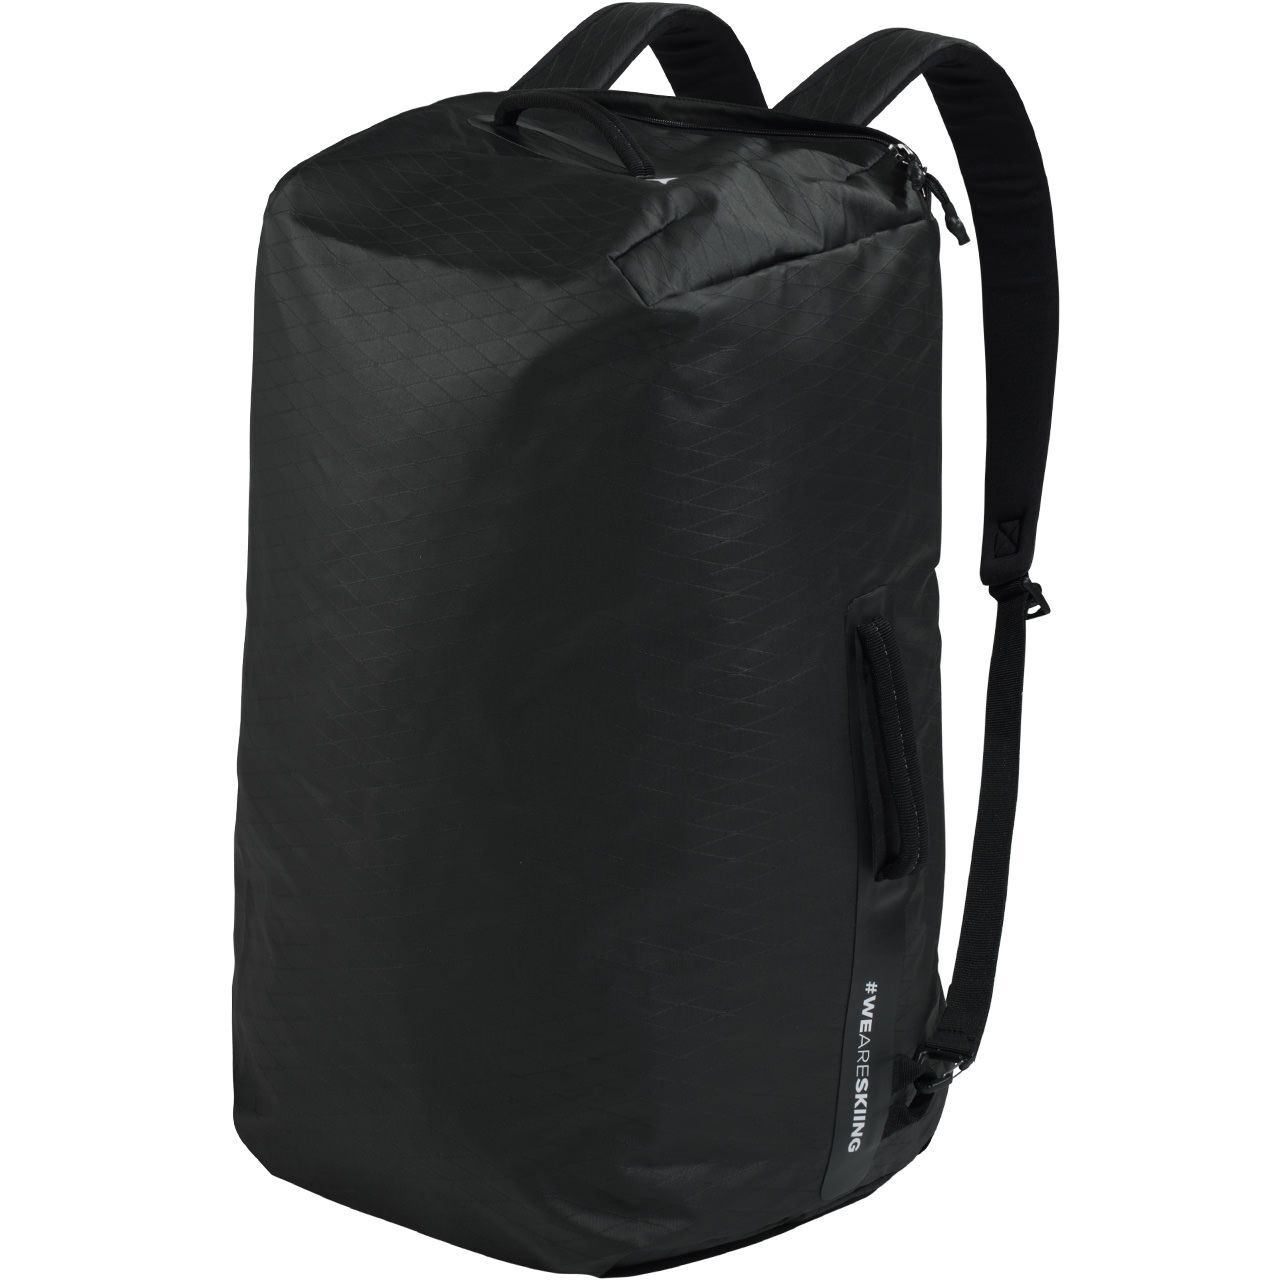 Atomic Duffle Bag 60 L black